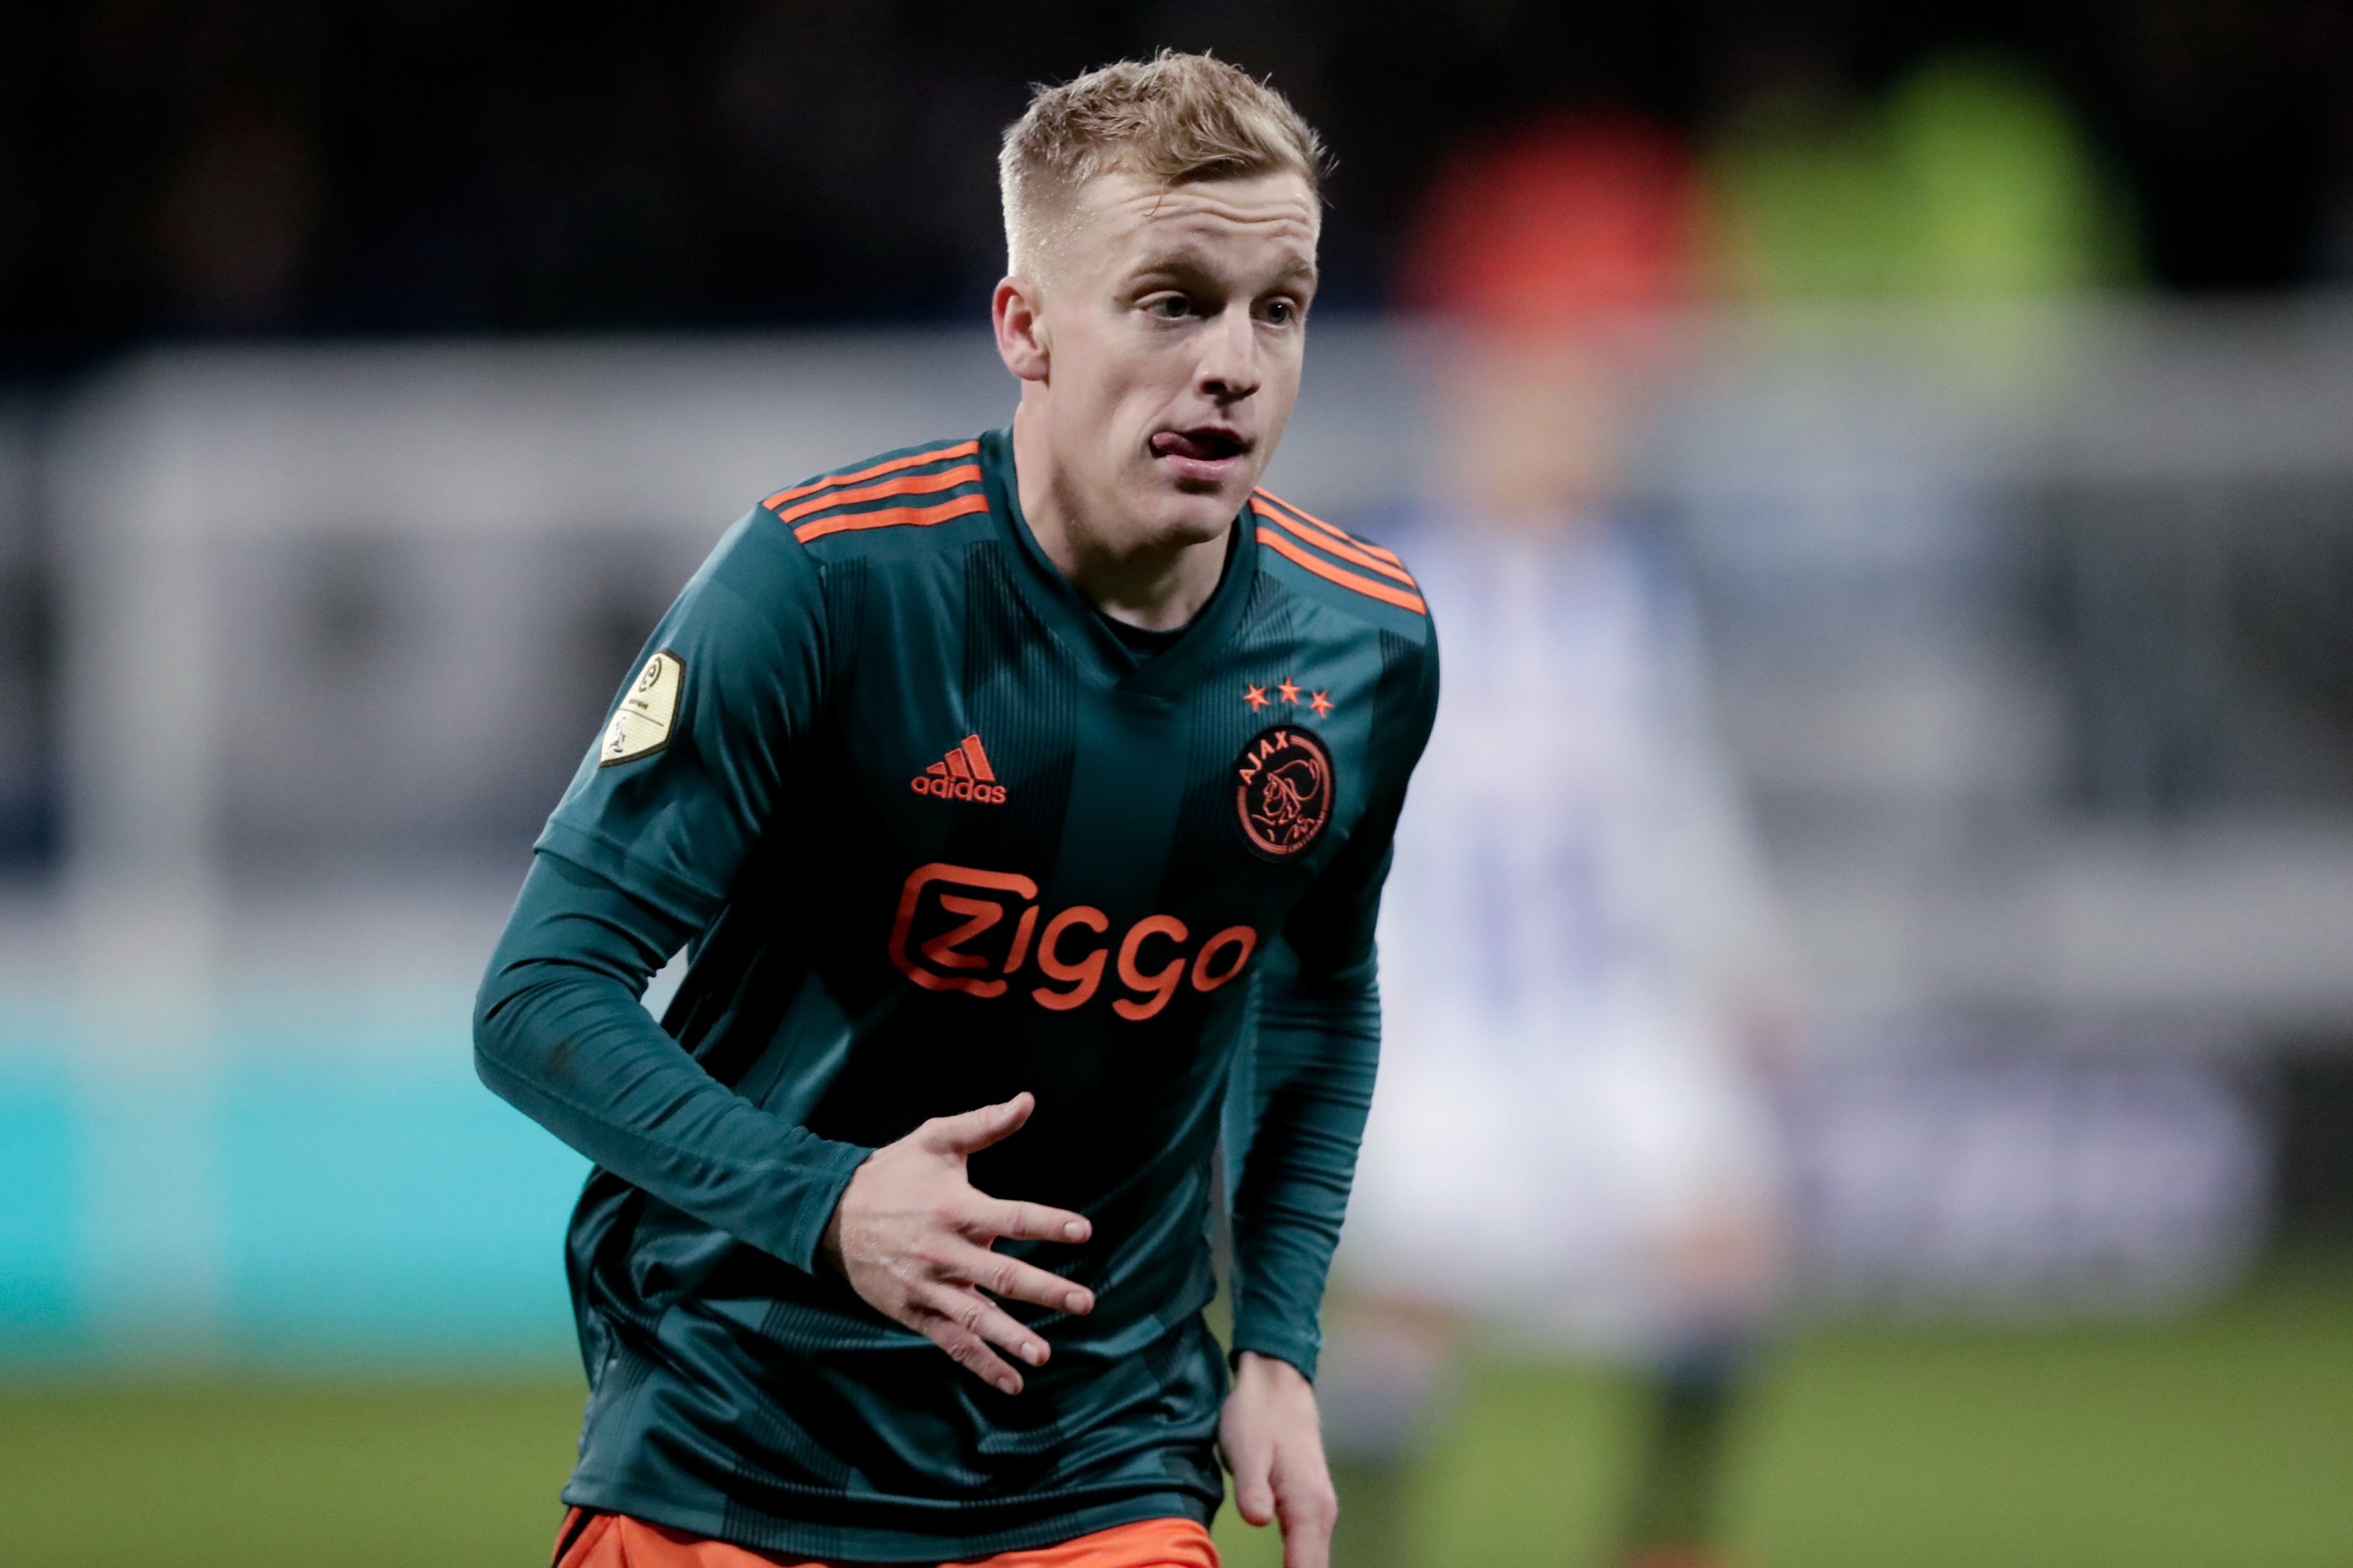 Manchester United reach an agreement to sign Ajax's Donny van de Beek